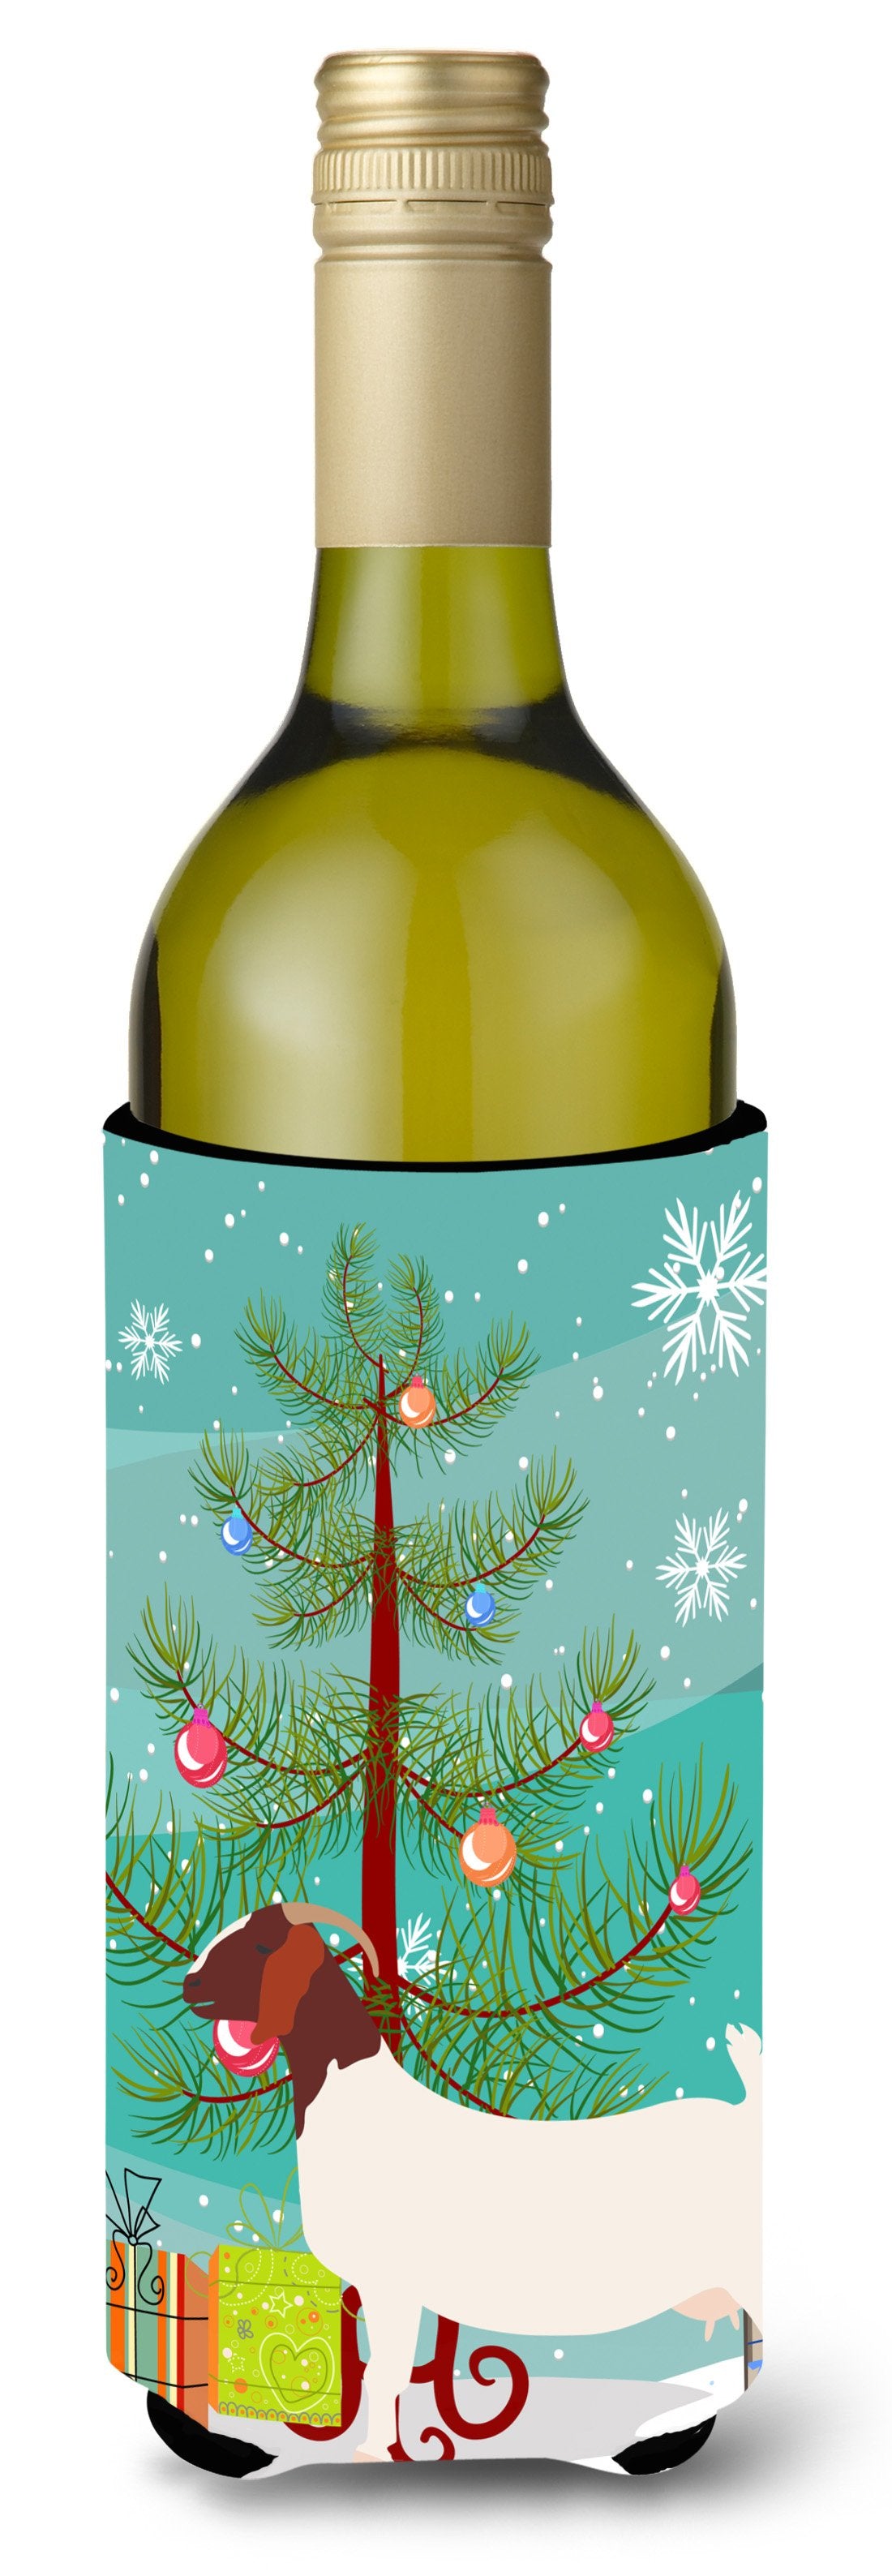 Boer Goat Christmas Wine Bottle Beverge Insulator Hugger BB9253LITERK by Caroline's Treasures